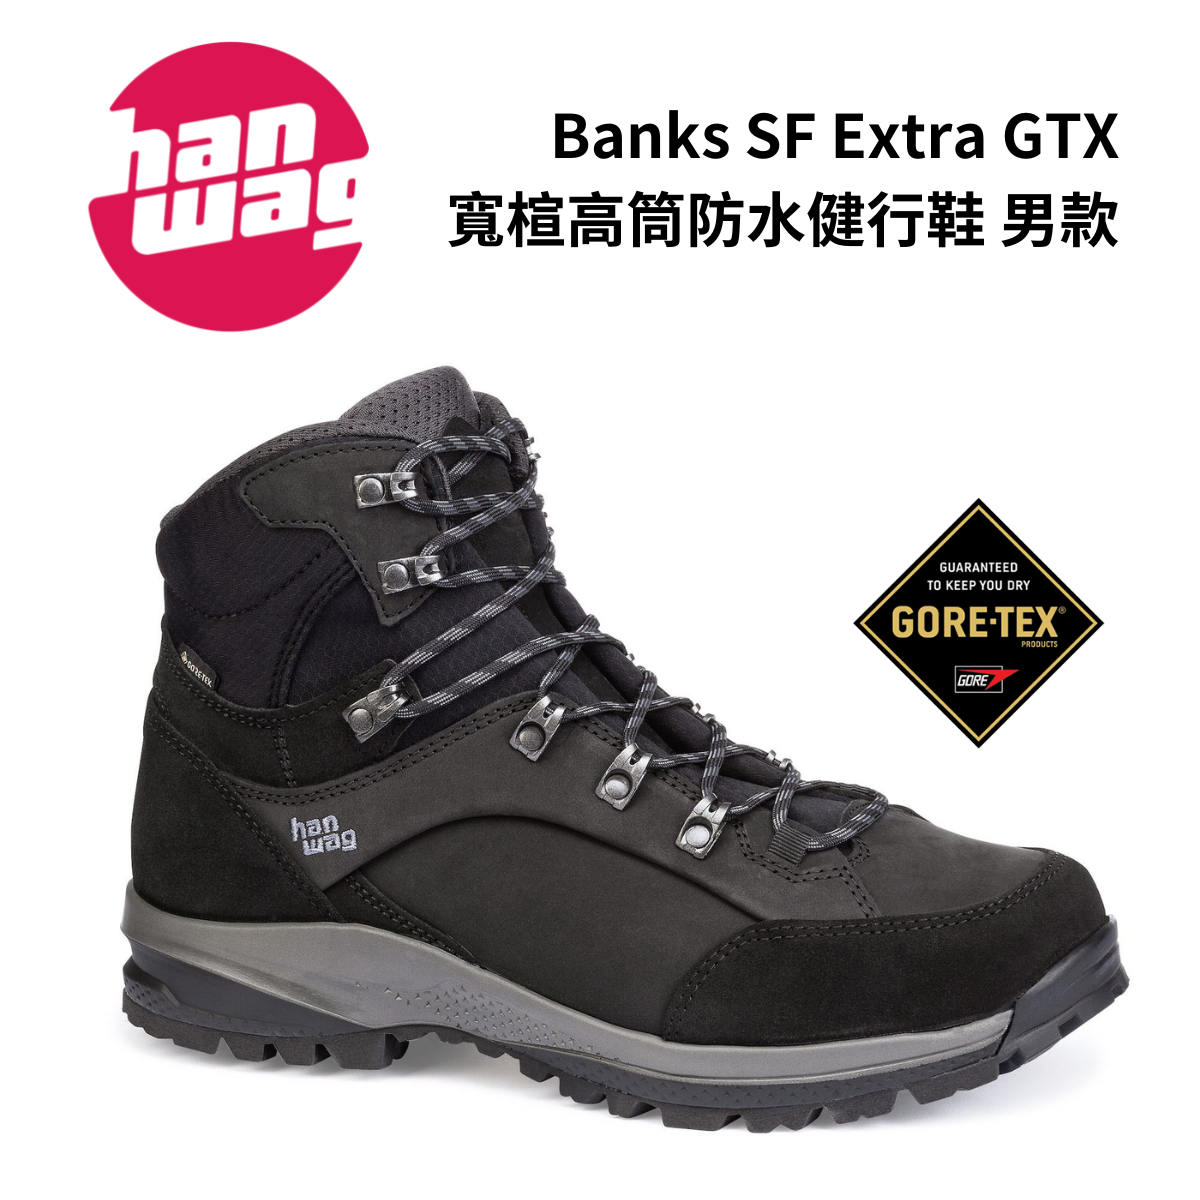 【Hanwag】Banks SF Extra GTX 男款 寬楦高筒防水健行鞋 黑/瀝青灰